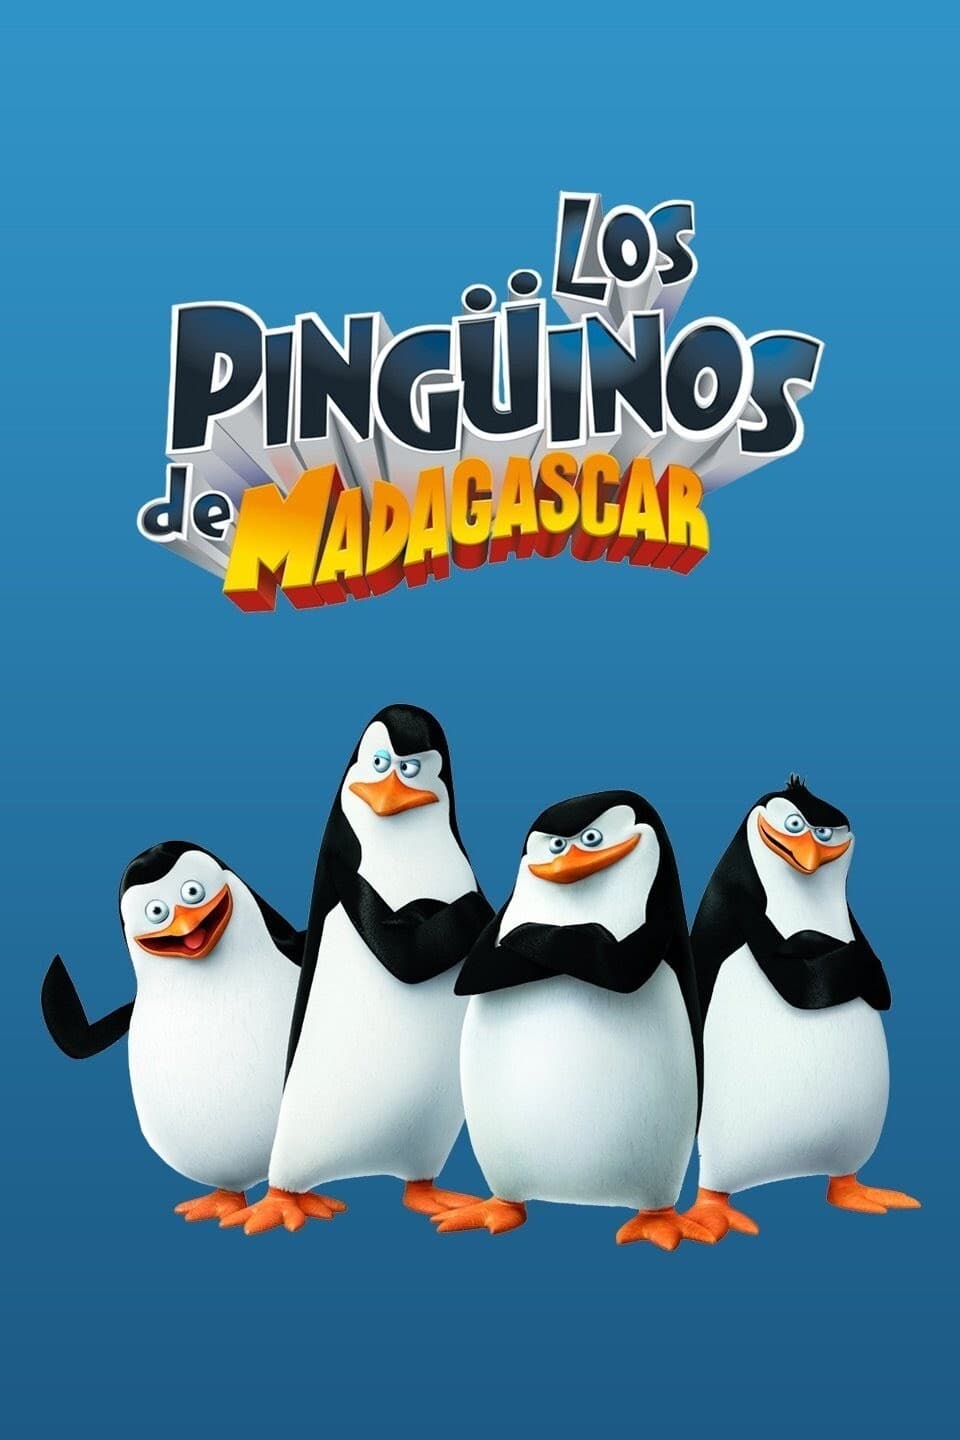 Ver Serie Los pingüinos de Madagascar Temporada 1 gratis online HD